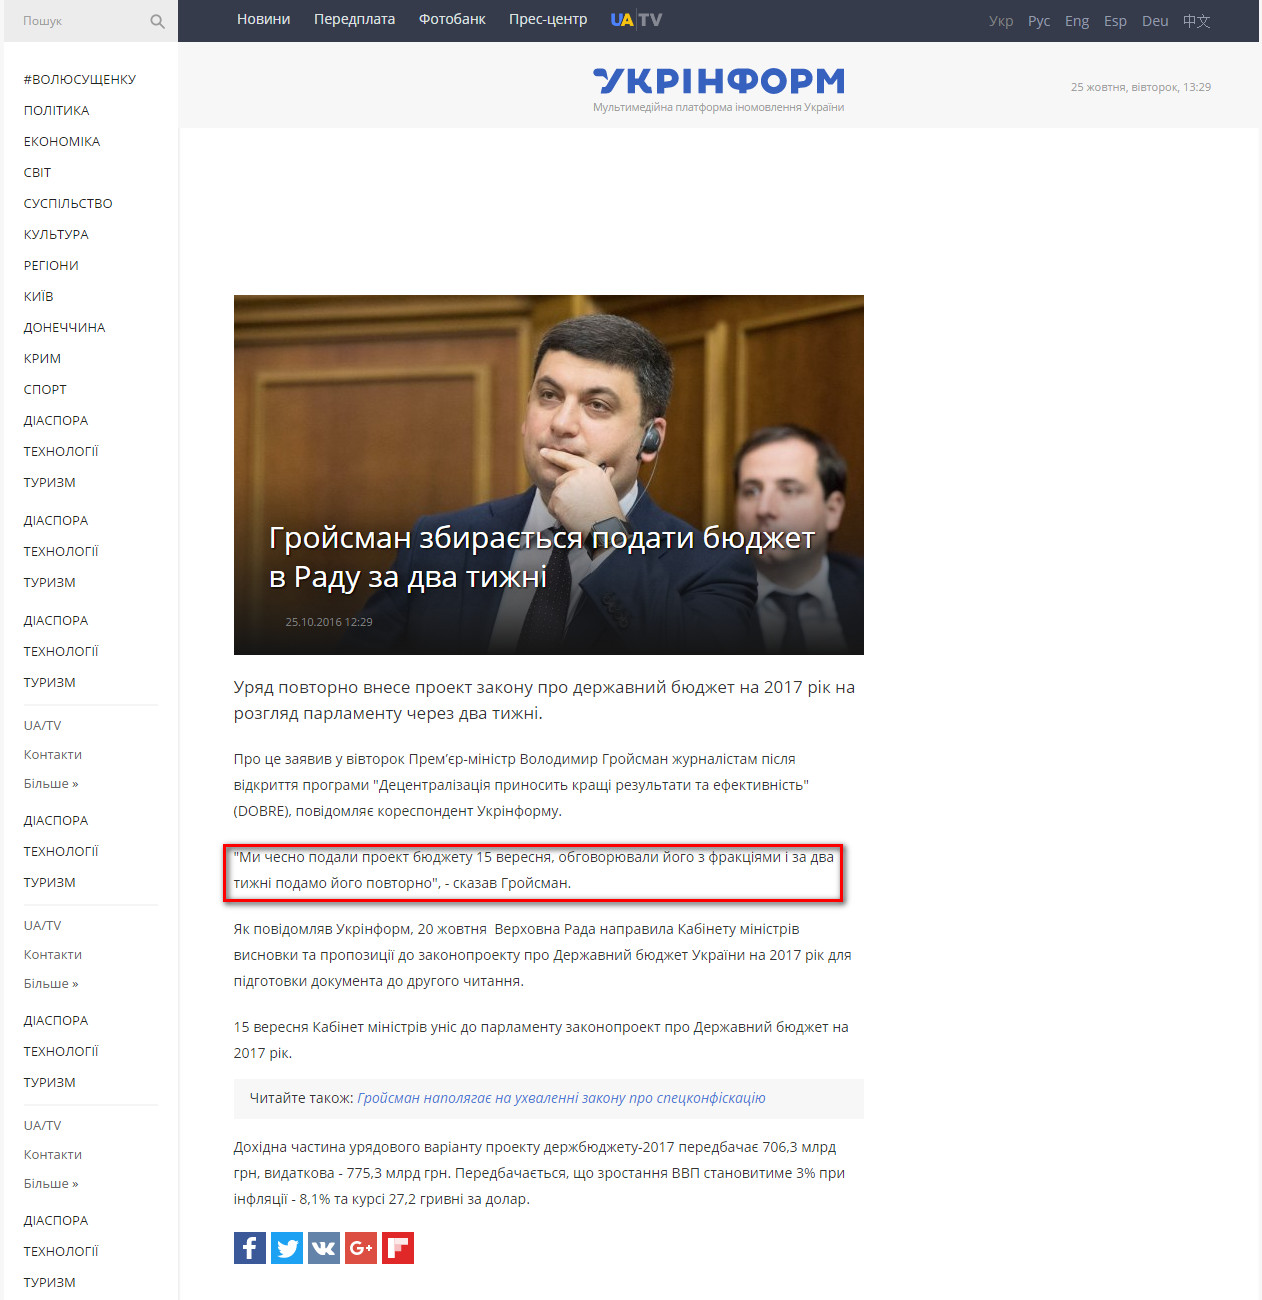 http://www.ukrinform.ua/rubric-economics/2107832-grojsman-zbiraetsa-podati-budzet-v-radu-za-dva-tizni.html